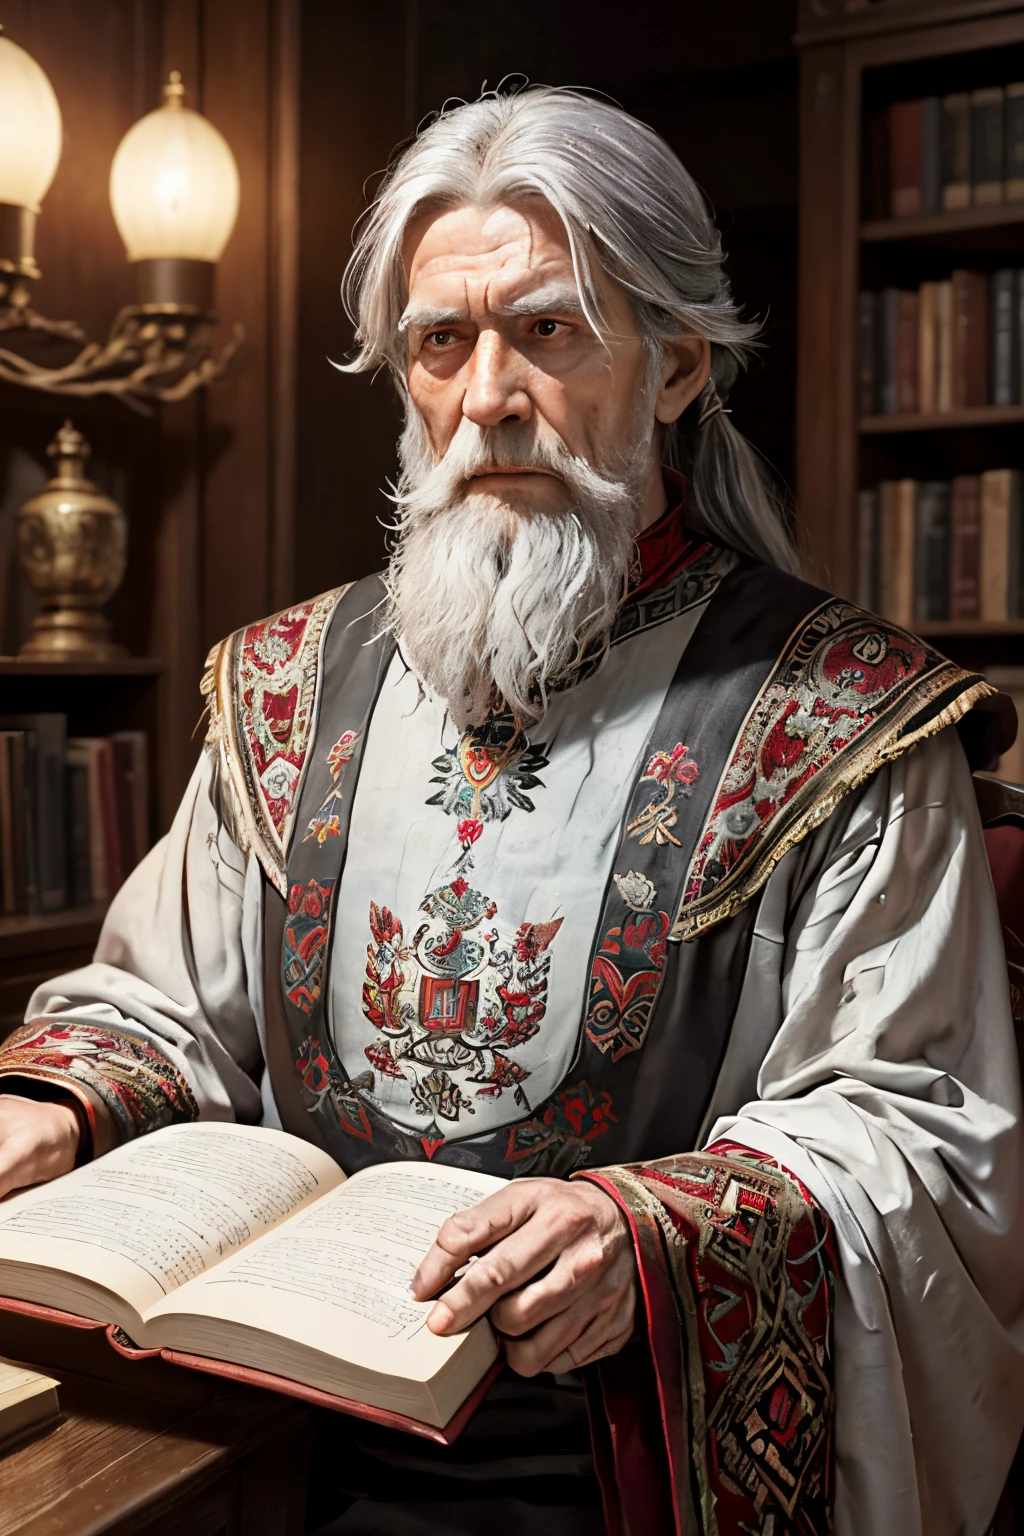 Ein 300 Jahre alter russischer Chronist steht hoch, mit langen grauen Haaren in einem langen bemalten Hemd mit russischen roten Ornamenten an den Ärmelkanten, mit einem alten riesigen Buch, das er mit beiden Händen an die Brust drückte, eine kleine Eule sitzt auf deiner Schulter